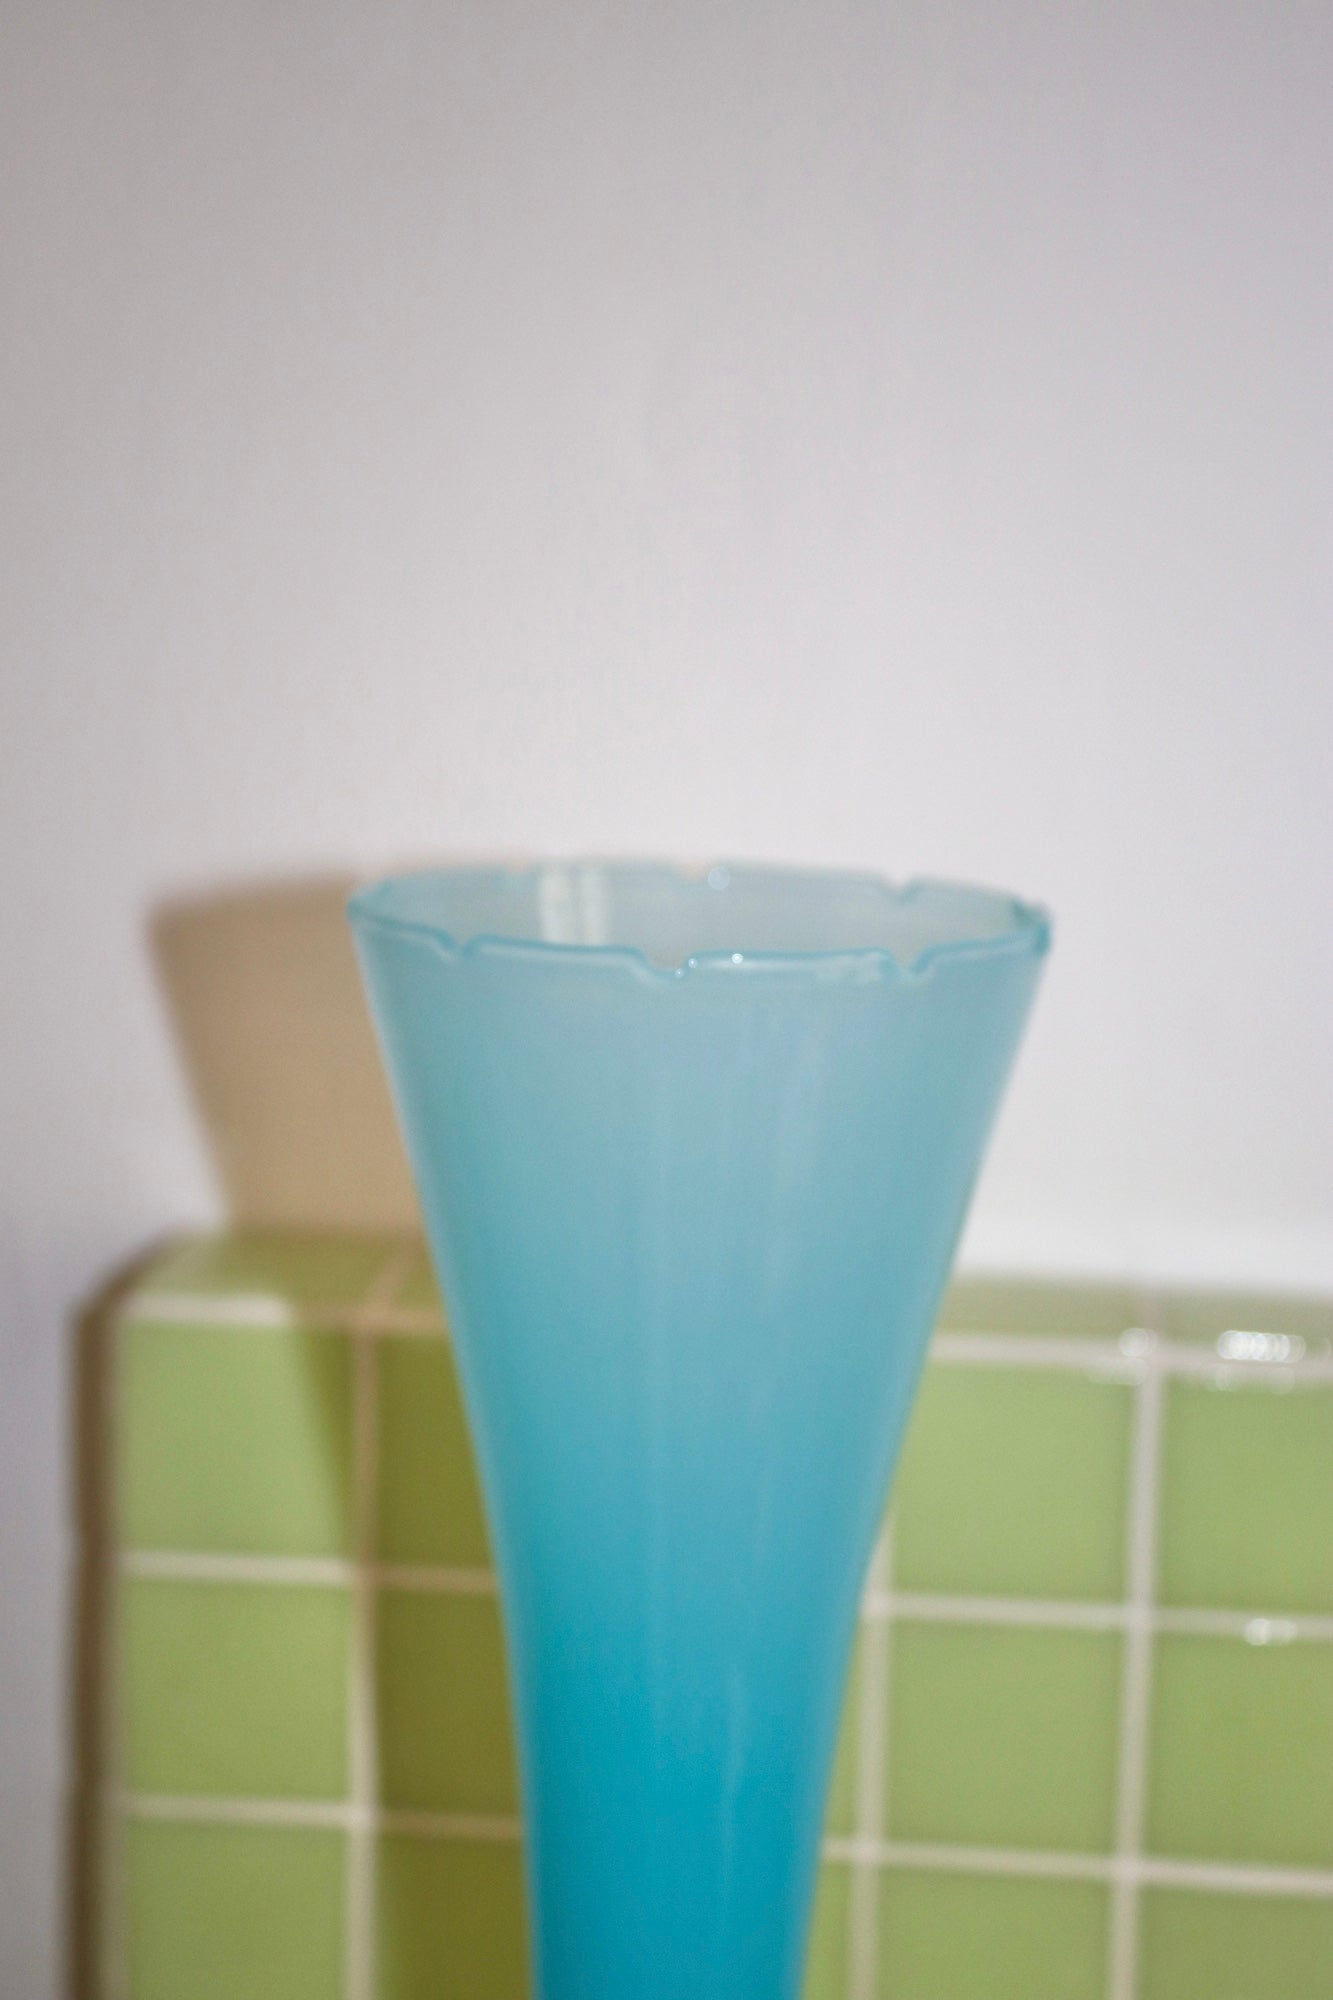 Vase bleu opaline